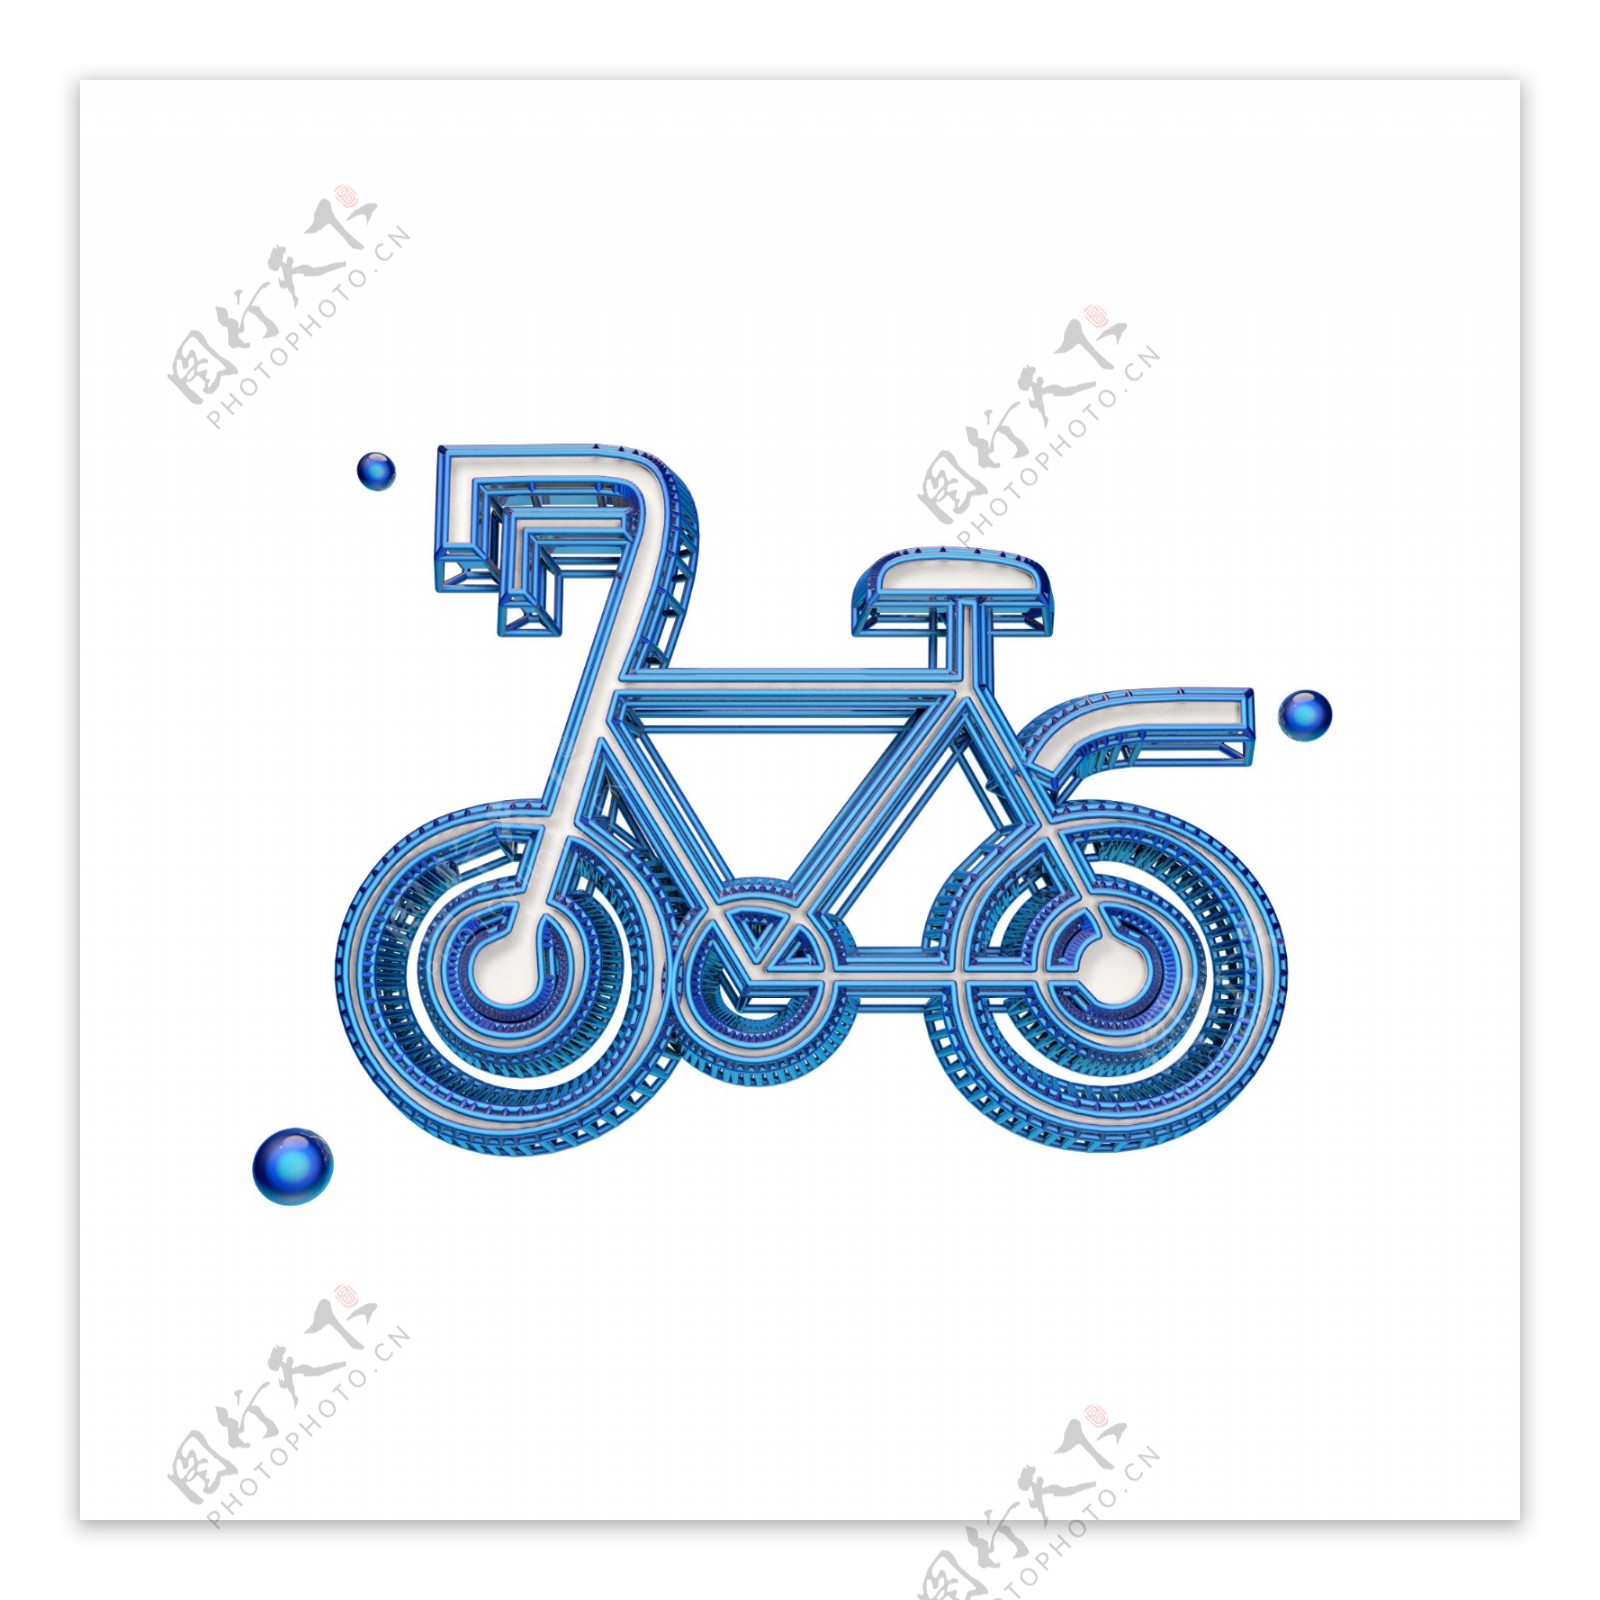 立体自行车图标